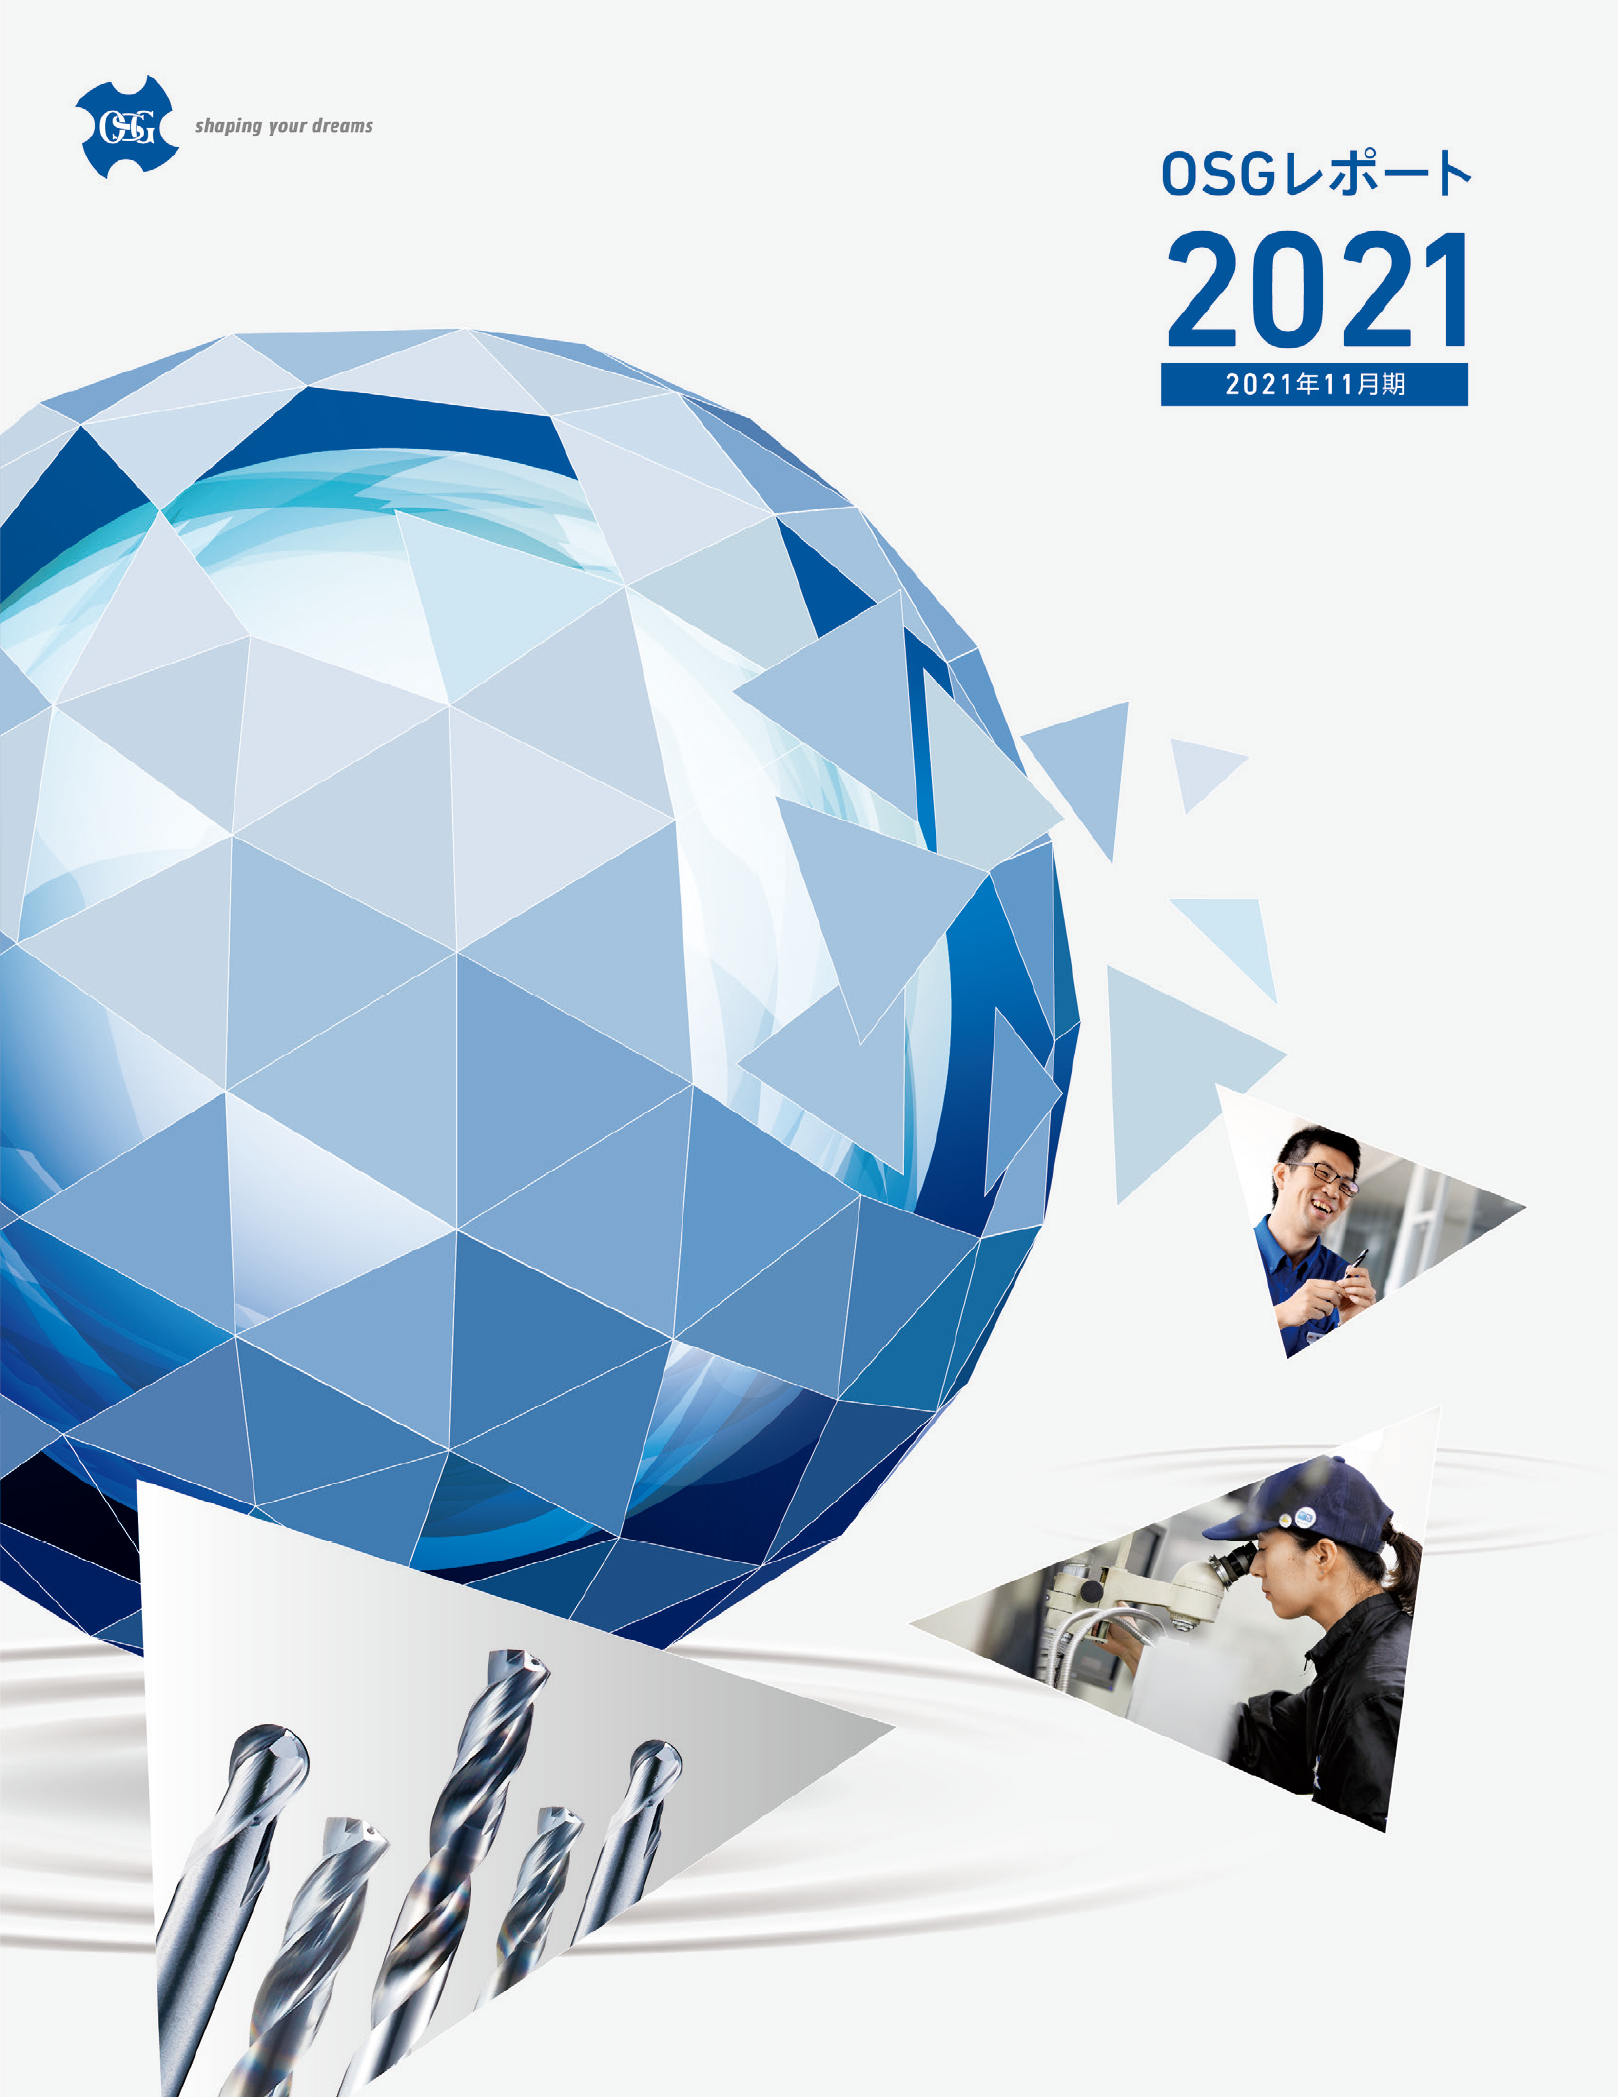 2021年版統合報告書